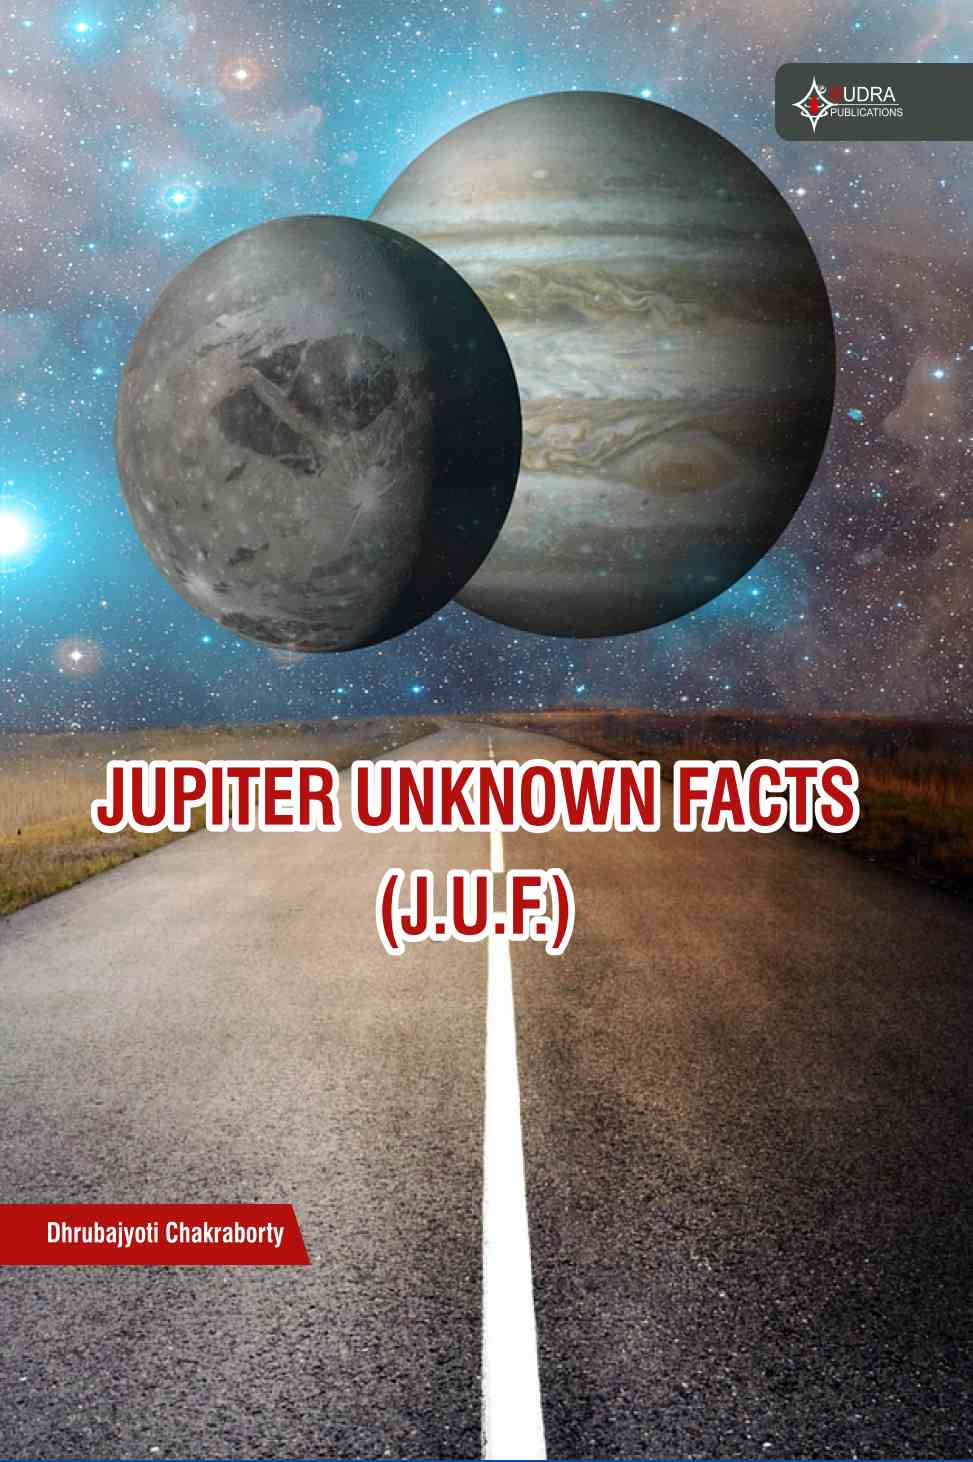 Jupiter unknown facts 